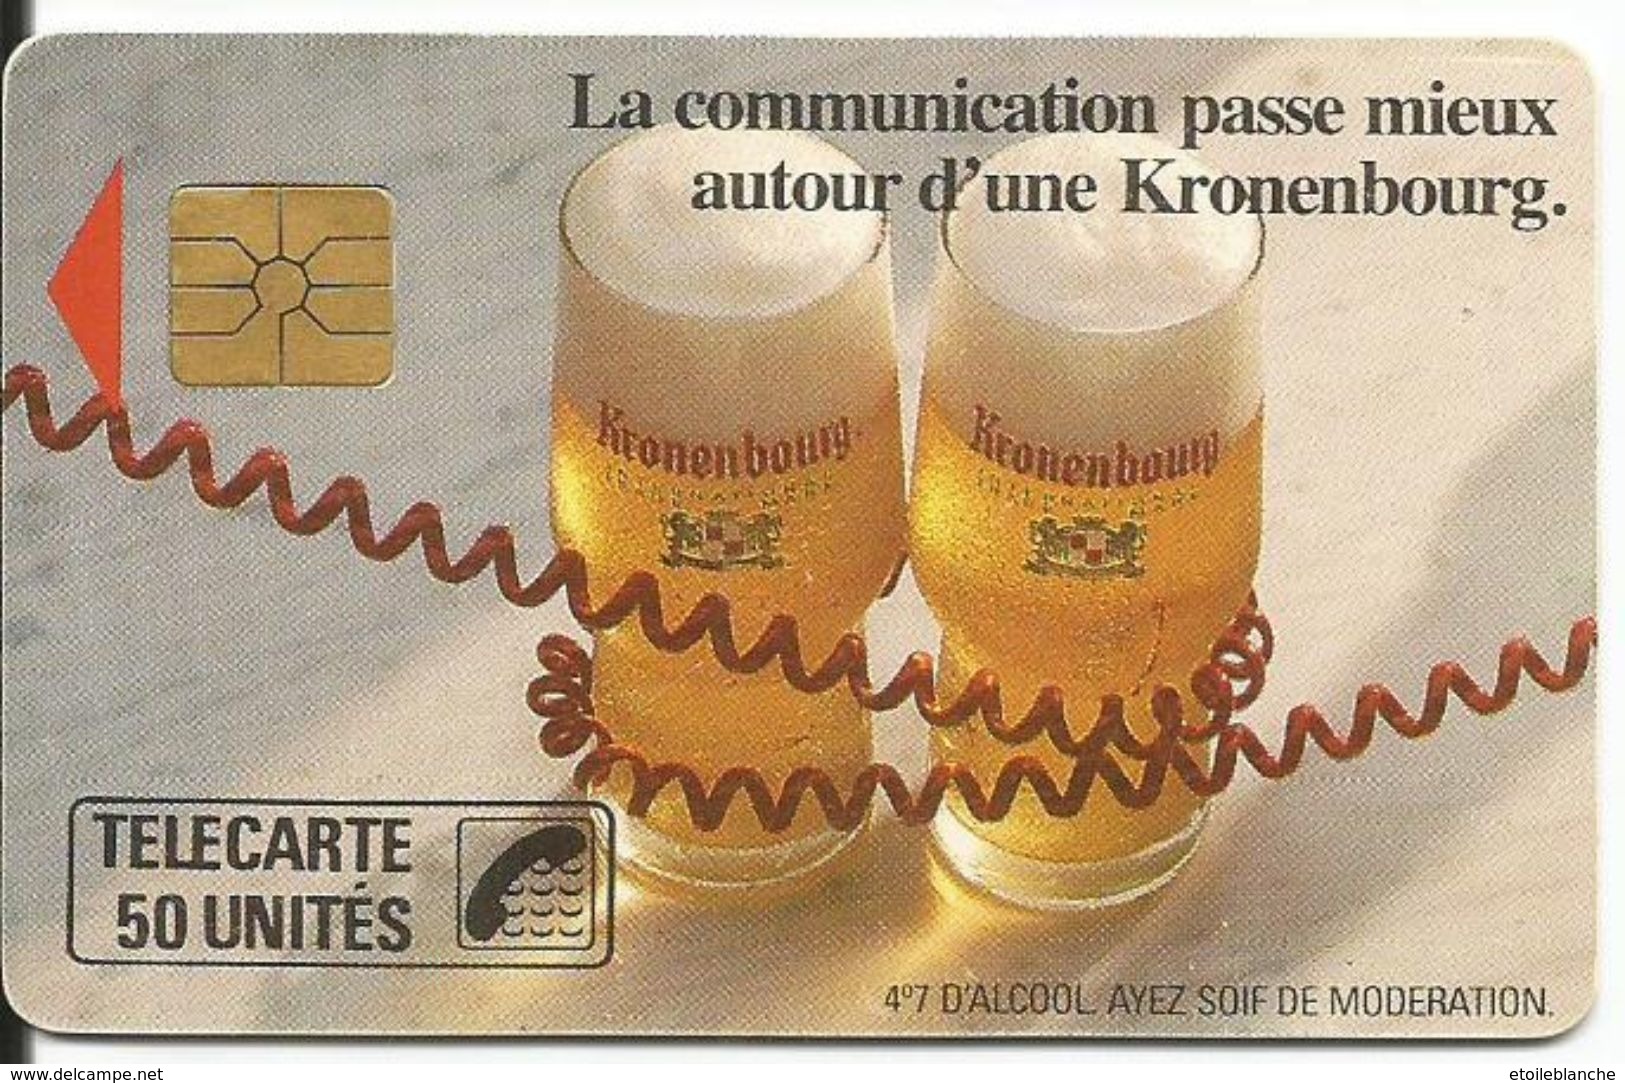 Telecarte Publicité, Bière Kronenbourg (alcool, Ayez Soif De Modération) - La Communication Passe Mieux (fil Téléphone) - Werbung